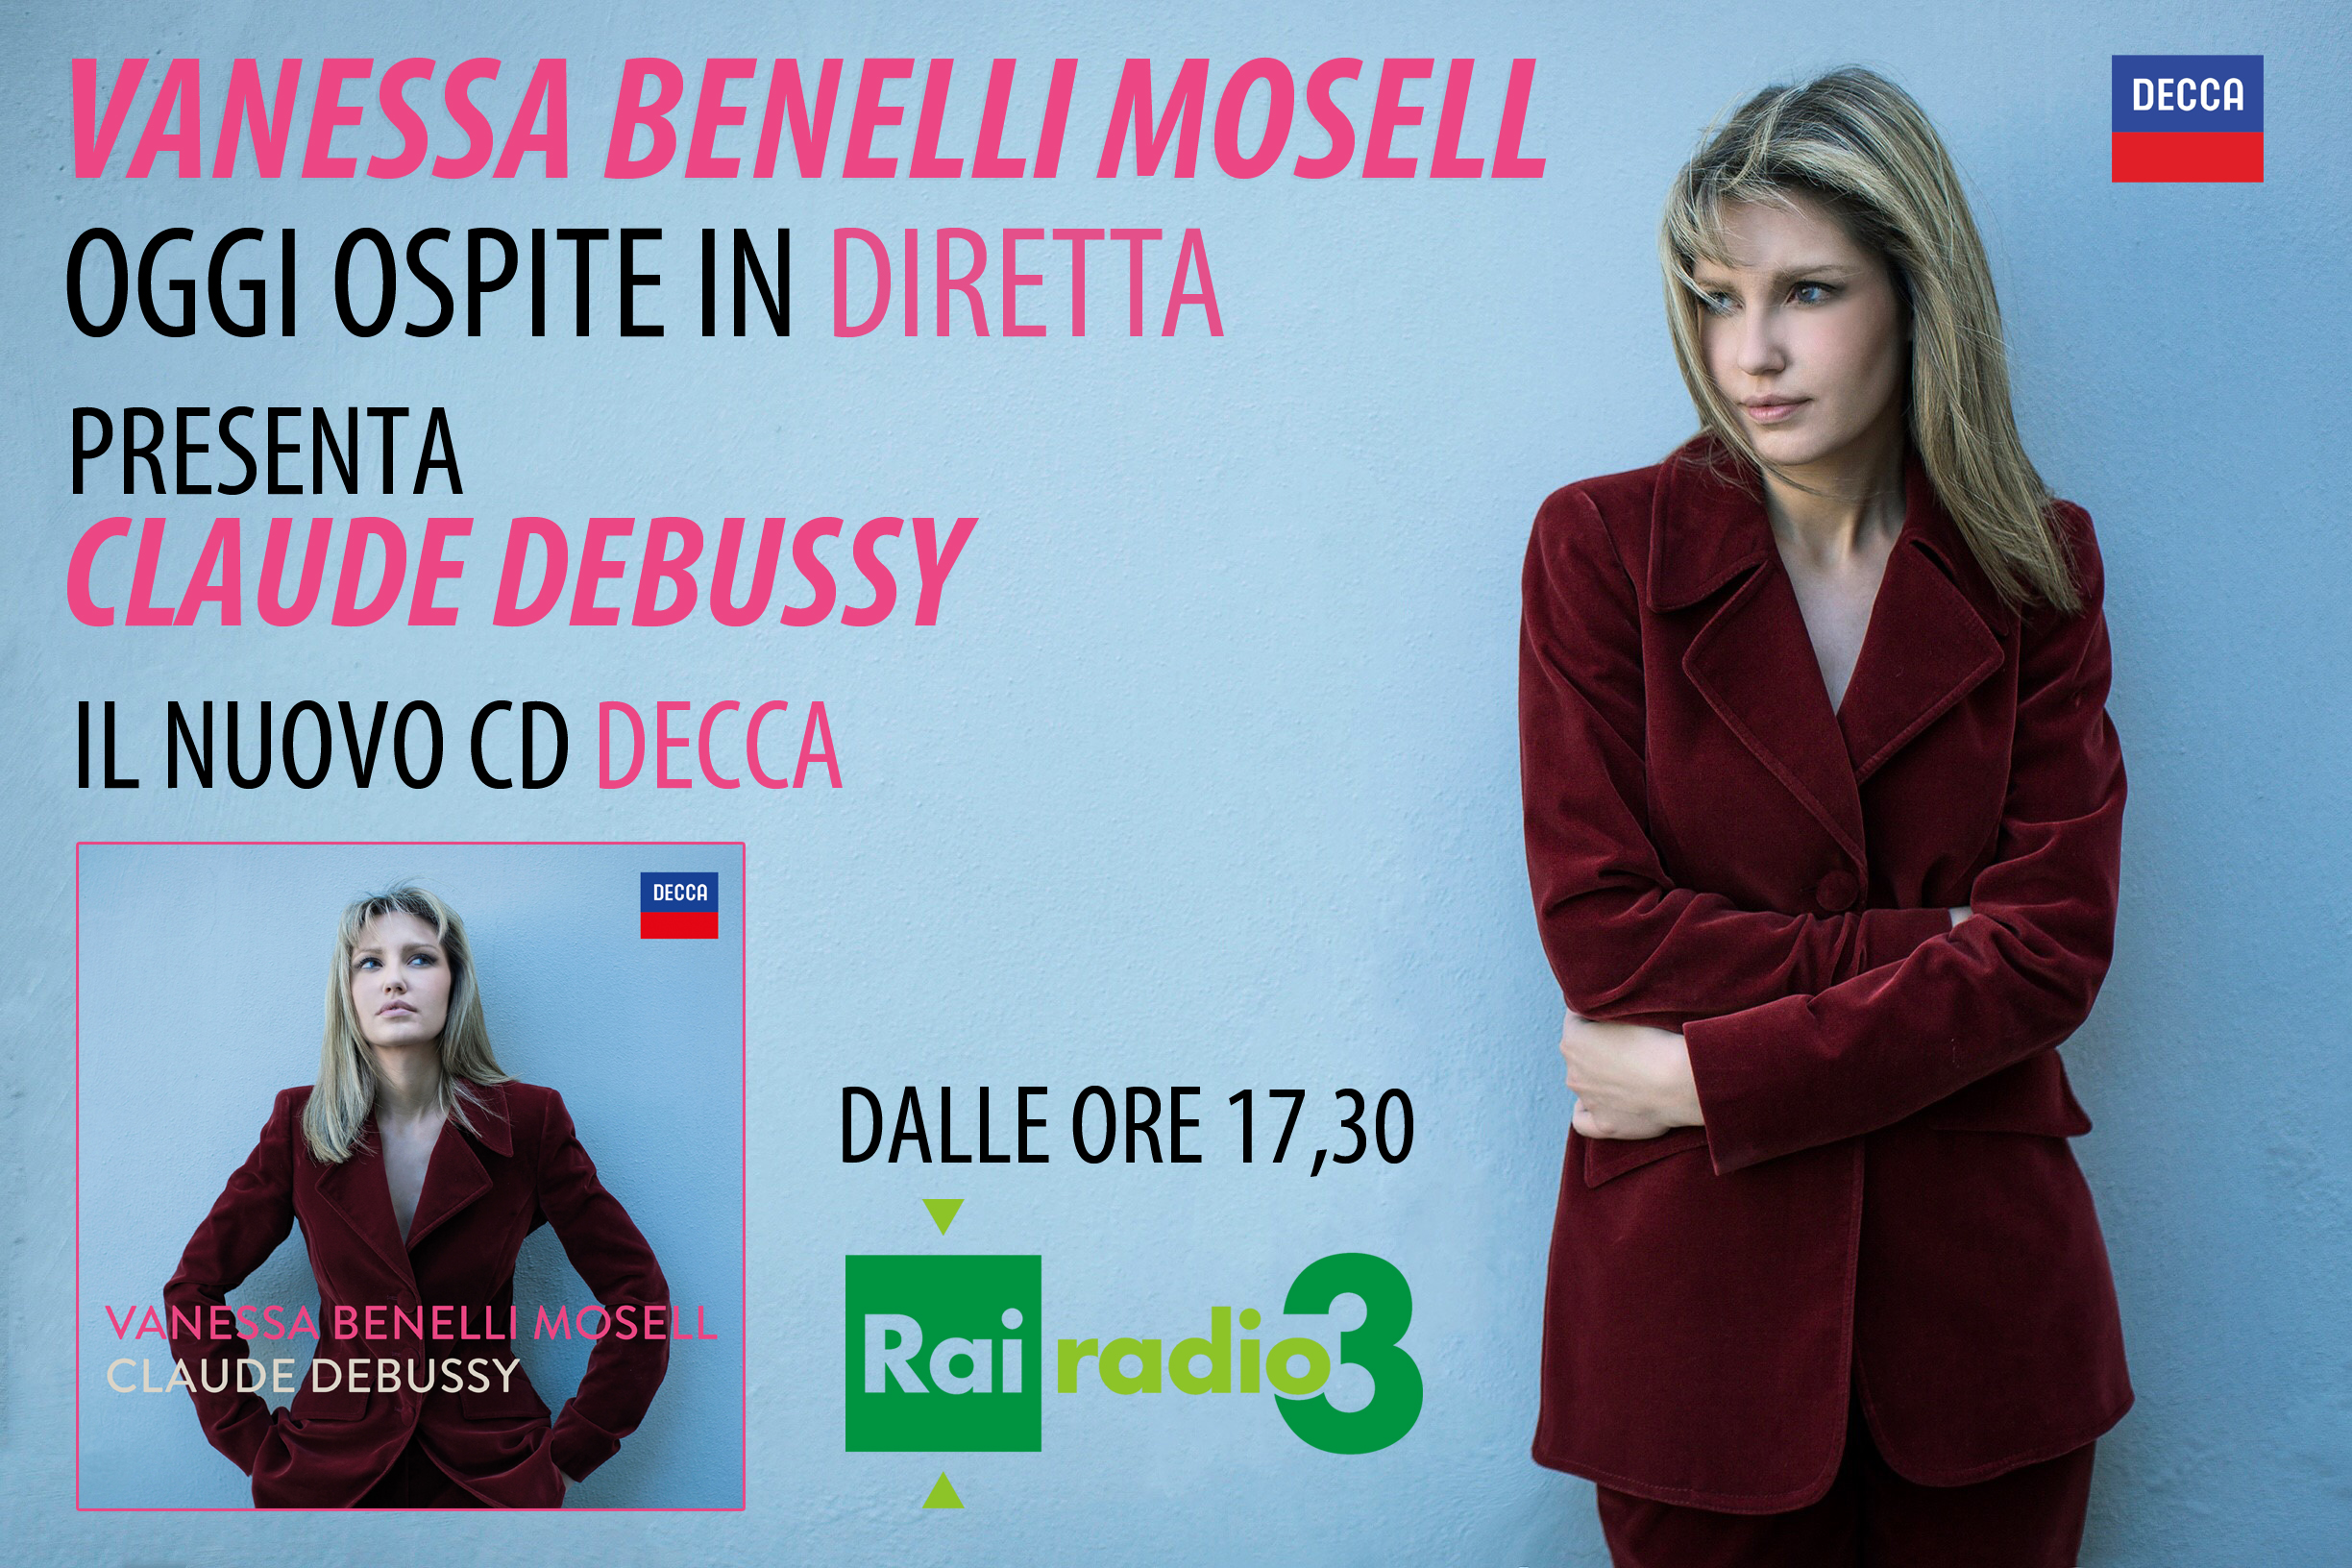 Vanessa Benelli Mosell oggi pomeriggio in diretta su Radio 3 Rai